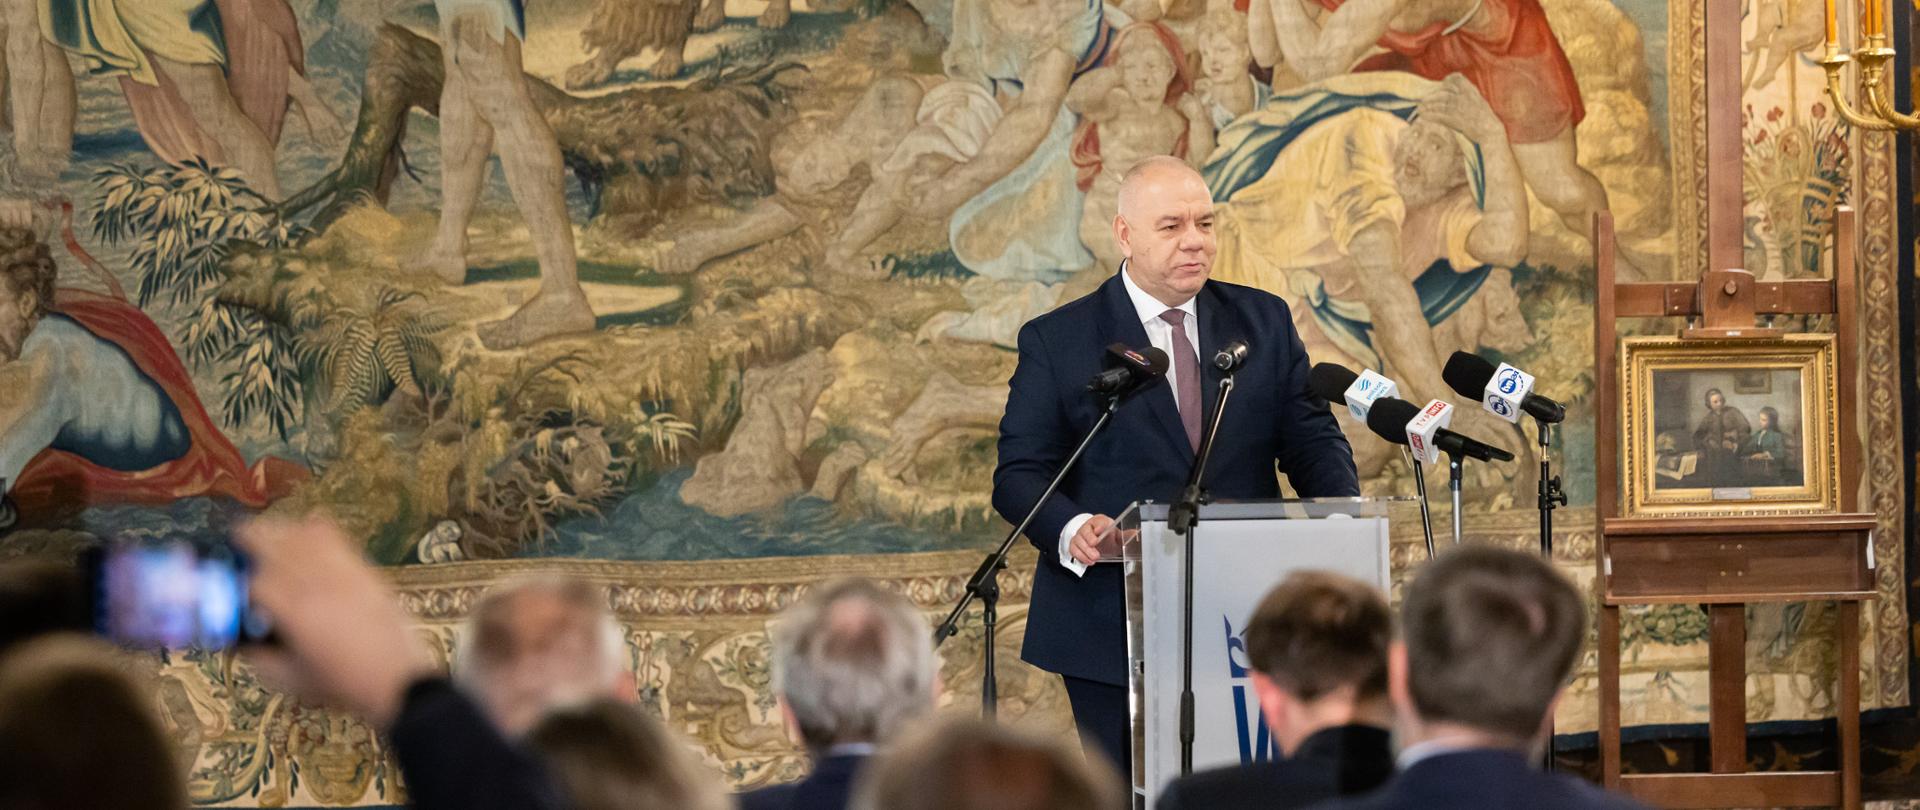 Wicepremier Jacek Sasin podczas prezentacji nowych dzieł sztuki w Zamku Królewskim na Wawelu